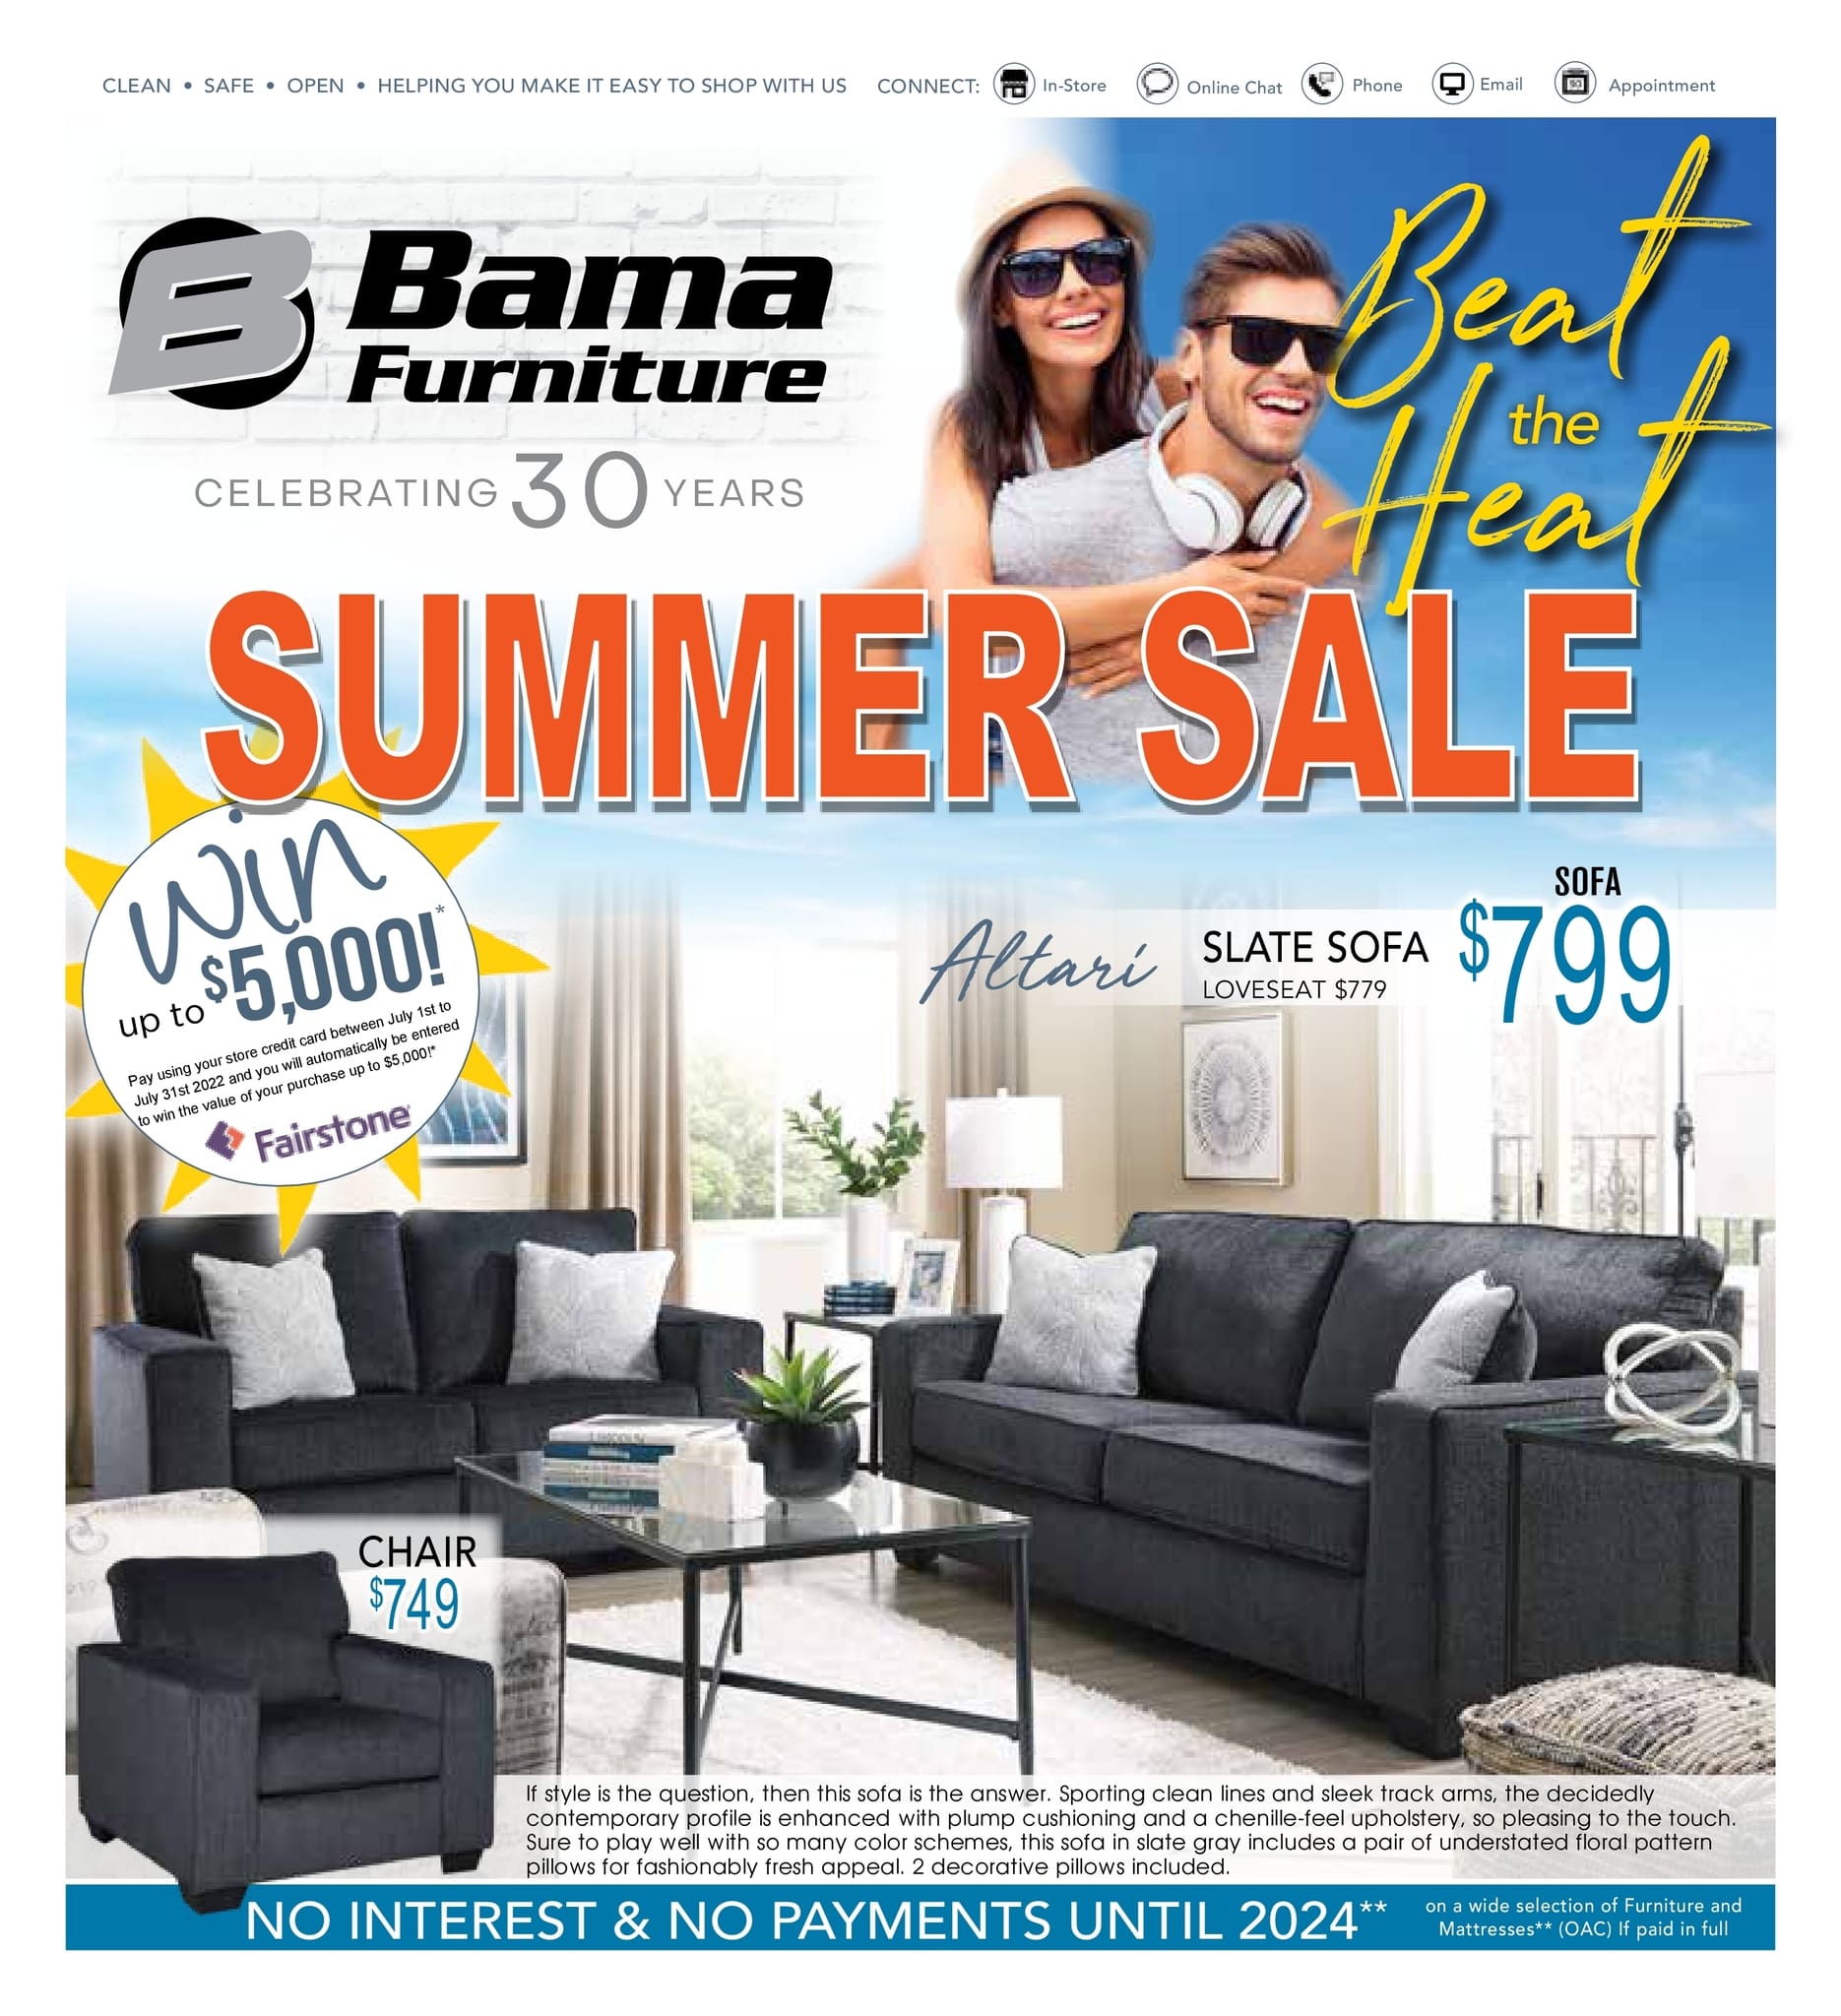 Bama Furniture - Monthly Savings